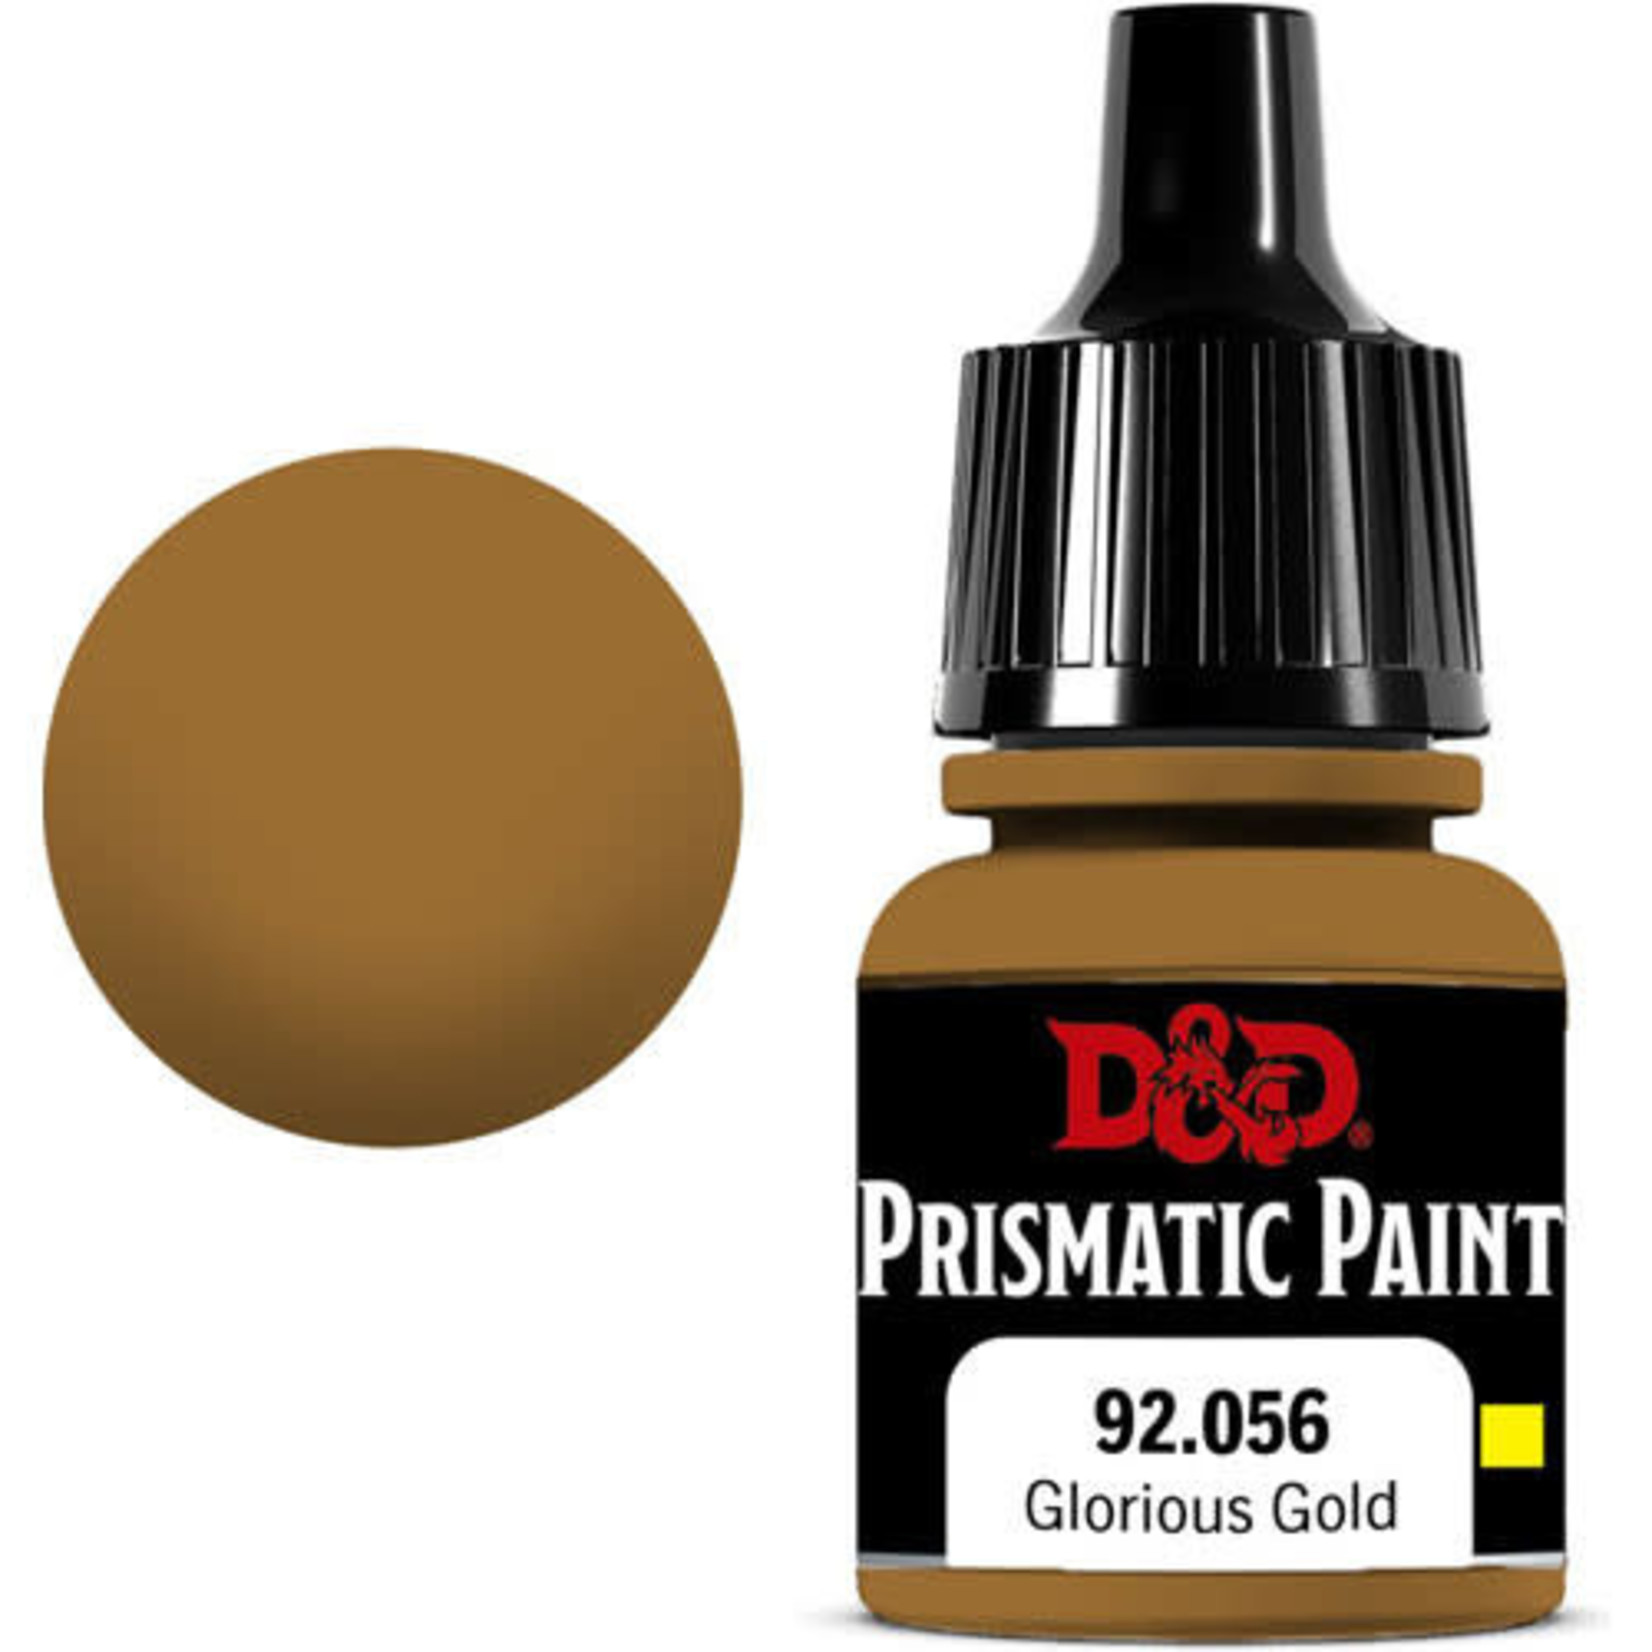 DnD Prismatic Paint Peinture pour figurine métalique Glorious Gold 92,056